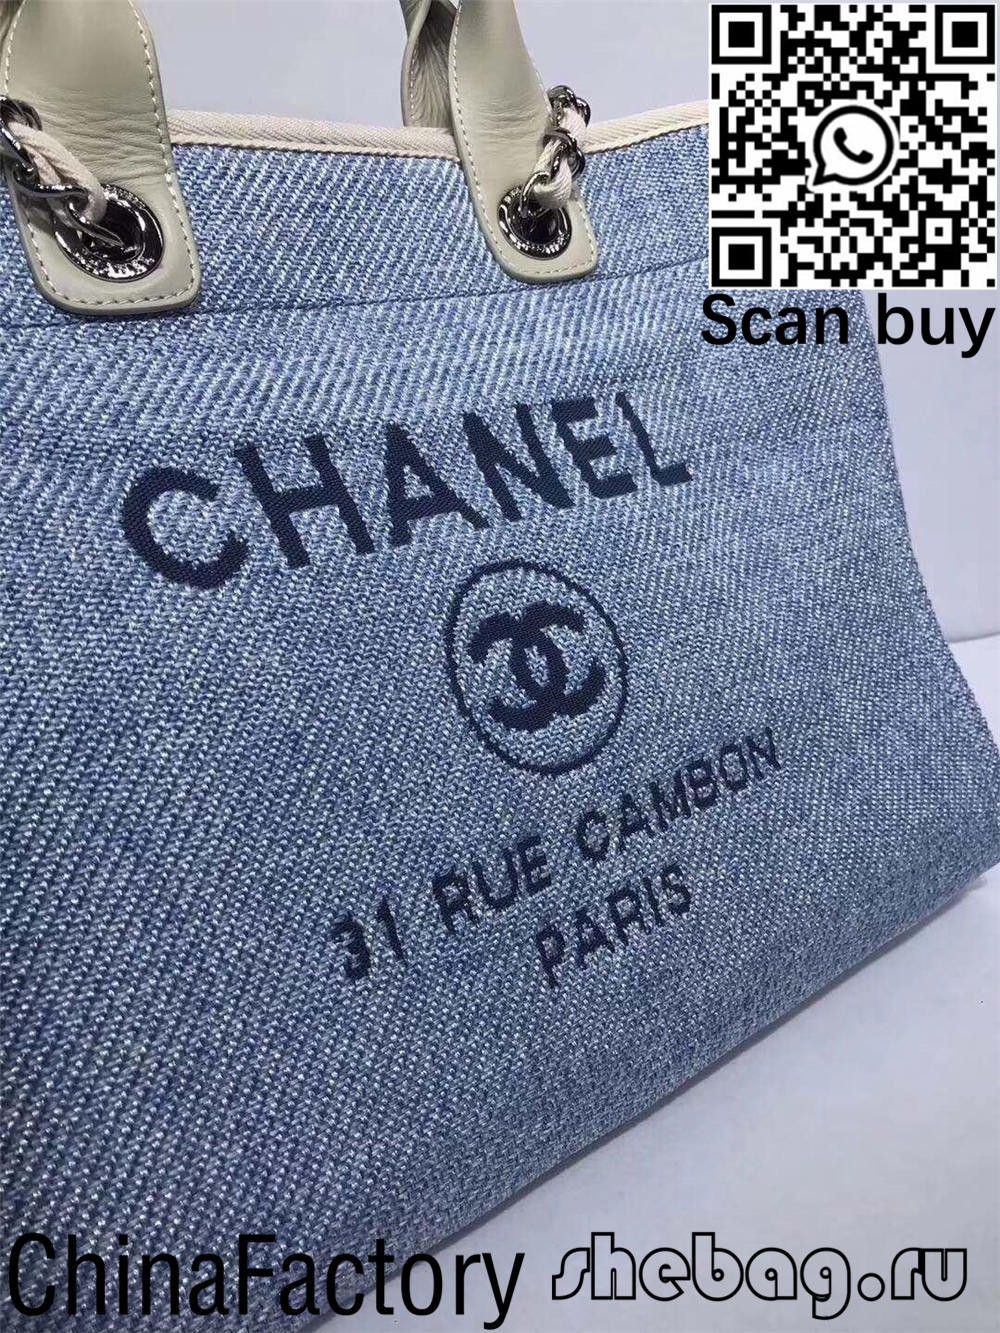 Plátená kabelka Chanel deauville najkvalitnejšia replika Dubaj (aktualizovaná v roku 2022) – online obchod s falošnou taškou Louis Vuitton najvyššej kvality, replika značkovej tašky ru